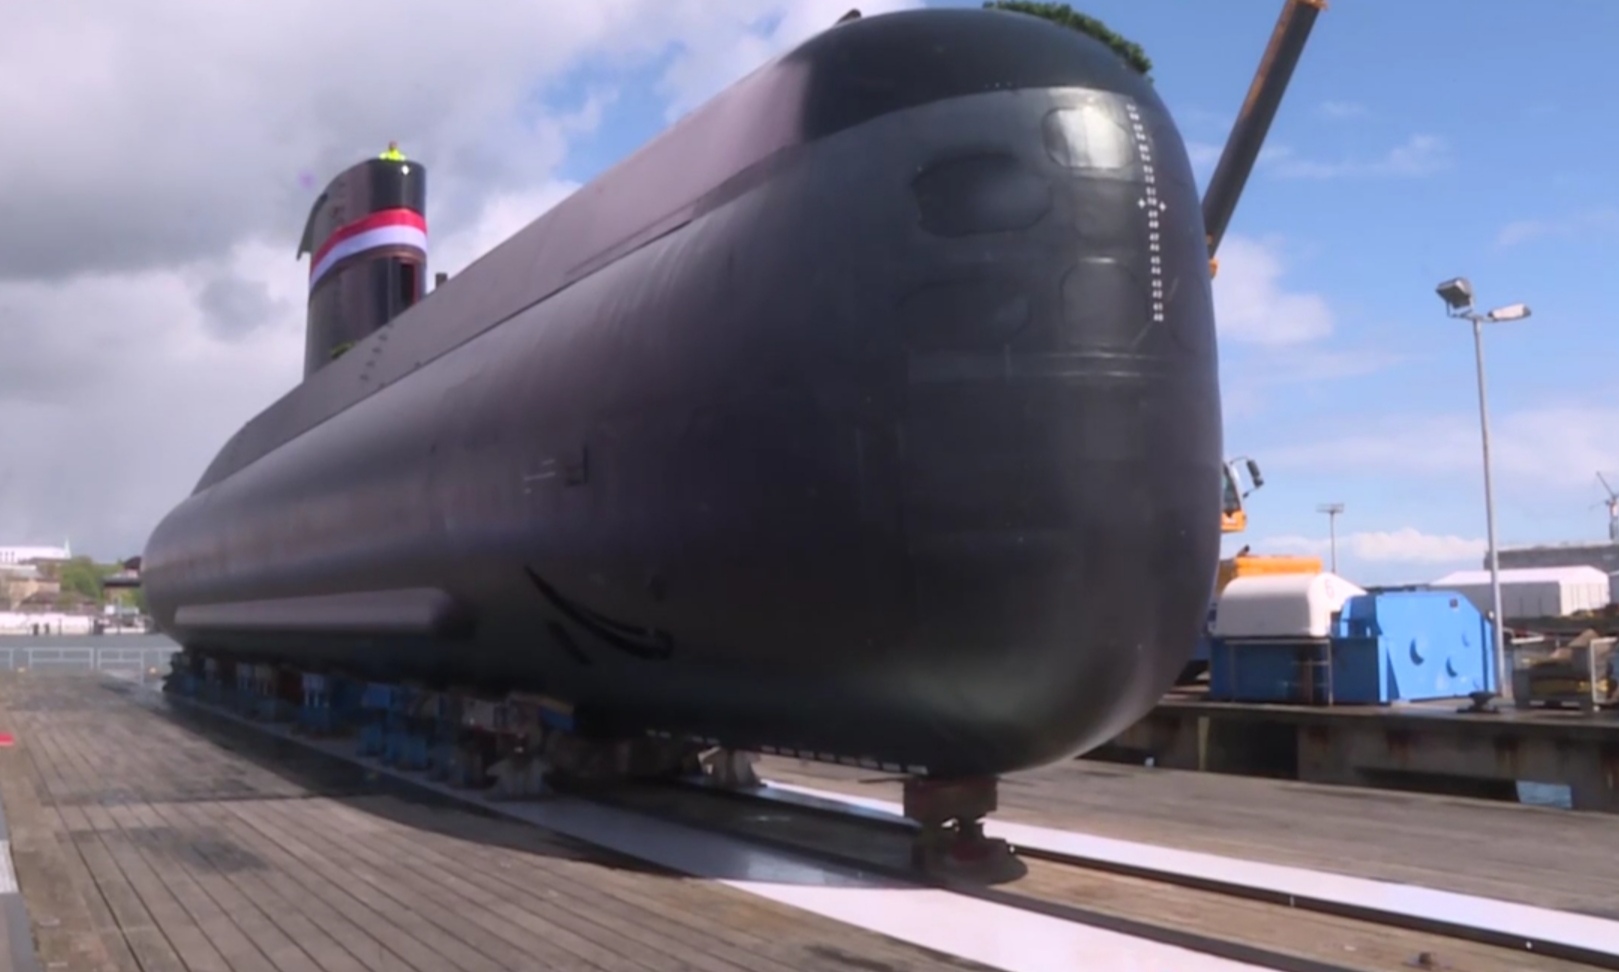 بالفيديو تعرف على الغواصة المتطورة والضخمة طراز S34 التي امتلكها الجيش المصري